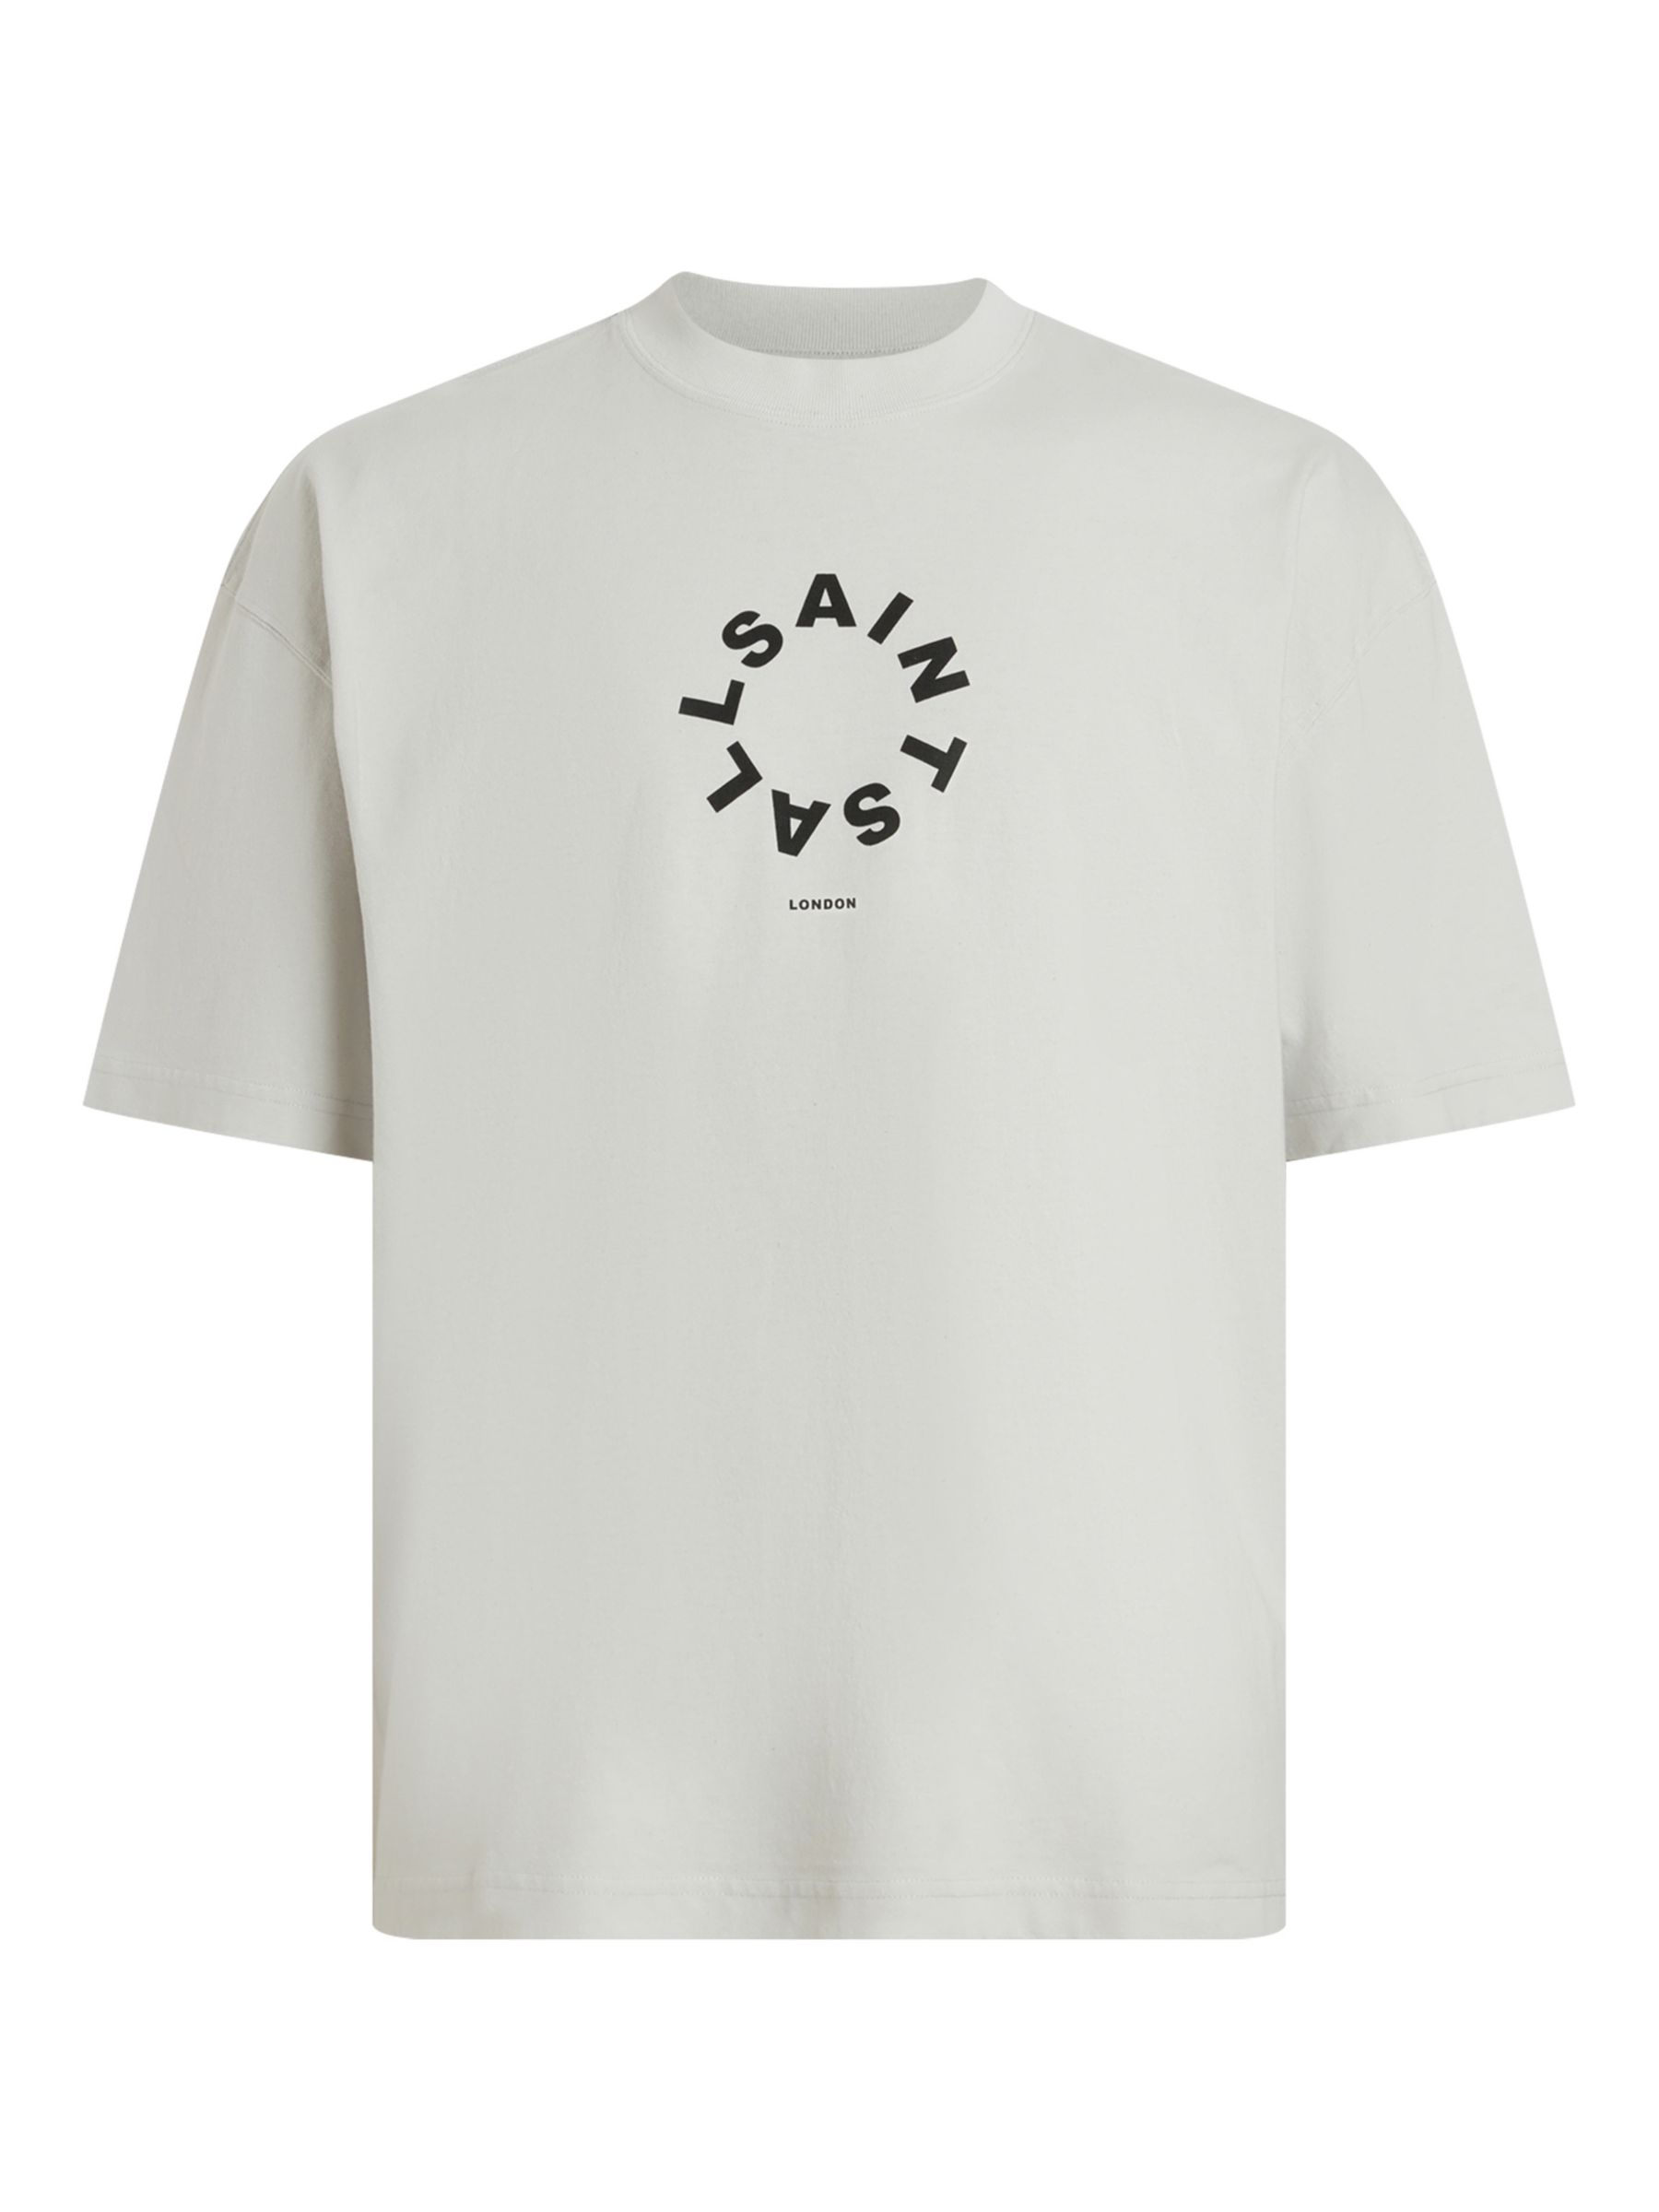 AllSaints Tierra Crew Neck T-Shirt, Cool Grey, L